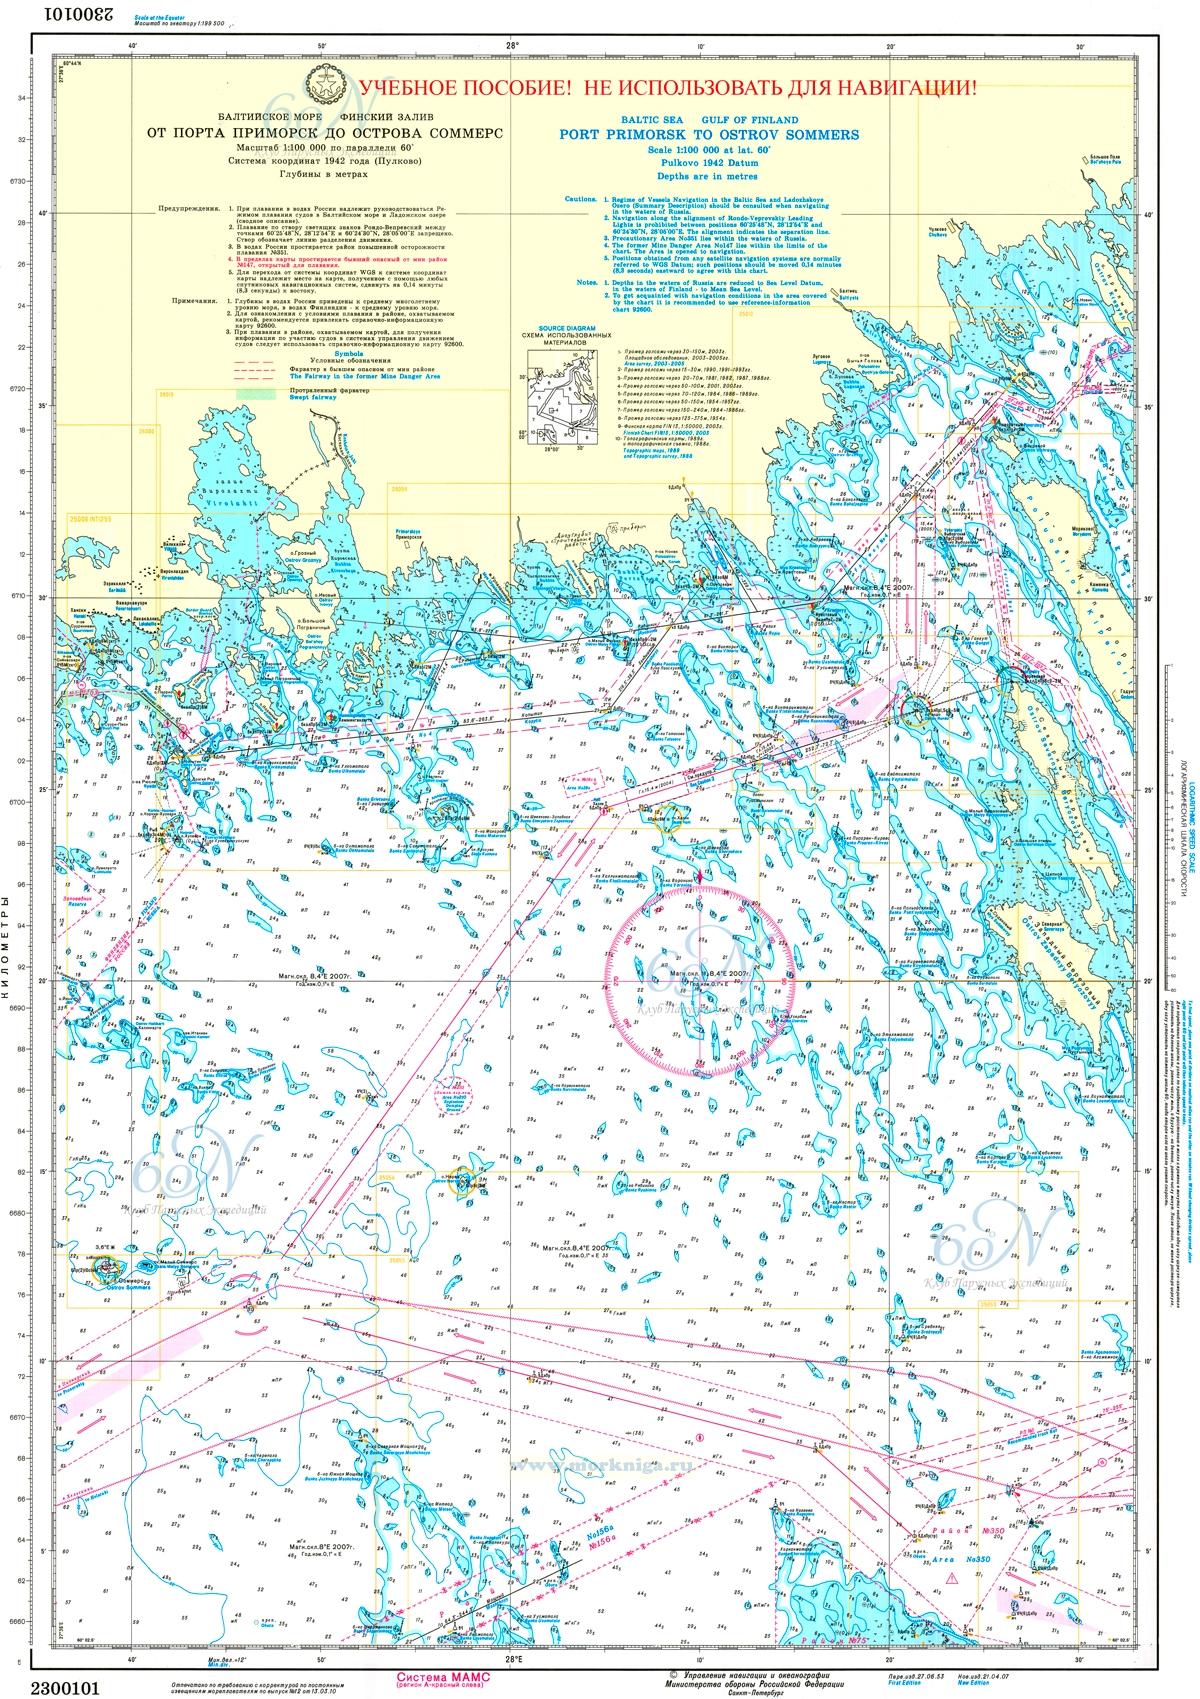 2300101 Балтийское море. Финский залив. От порта Приморск до острова Соммерс. Масштаб 1:100 000 (Учебная морская карта)